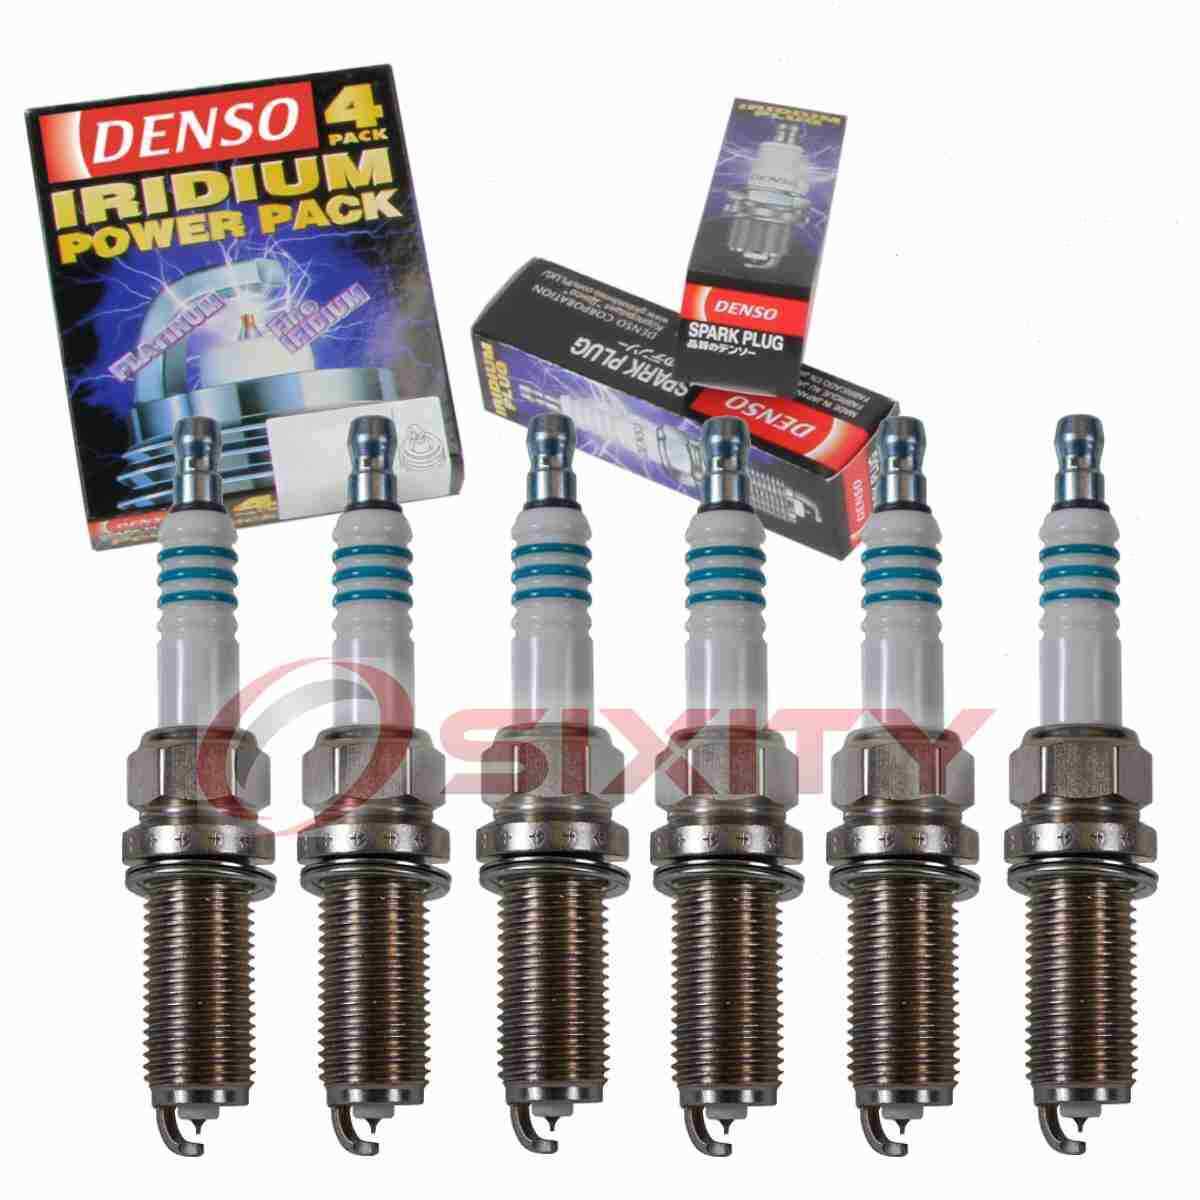 6 pc DENSO 5343 Iridium Power Spark Plugs for SPLZFR5C11 SPLZFR5B13 lw